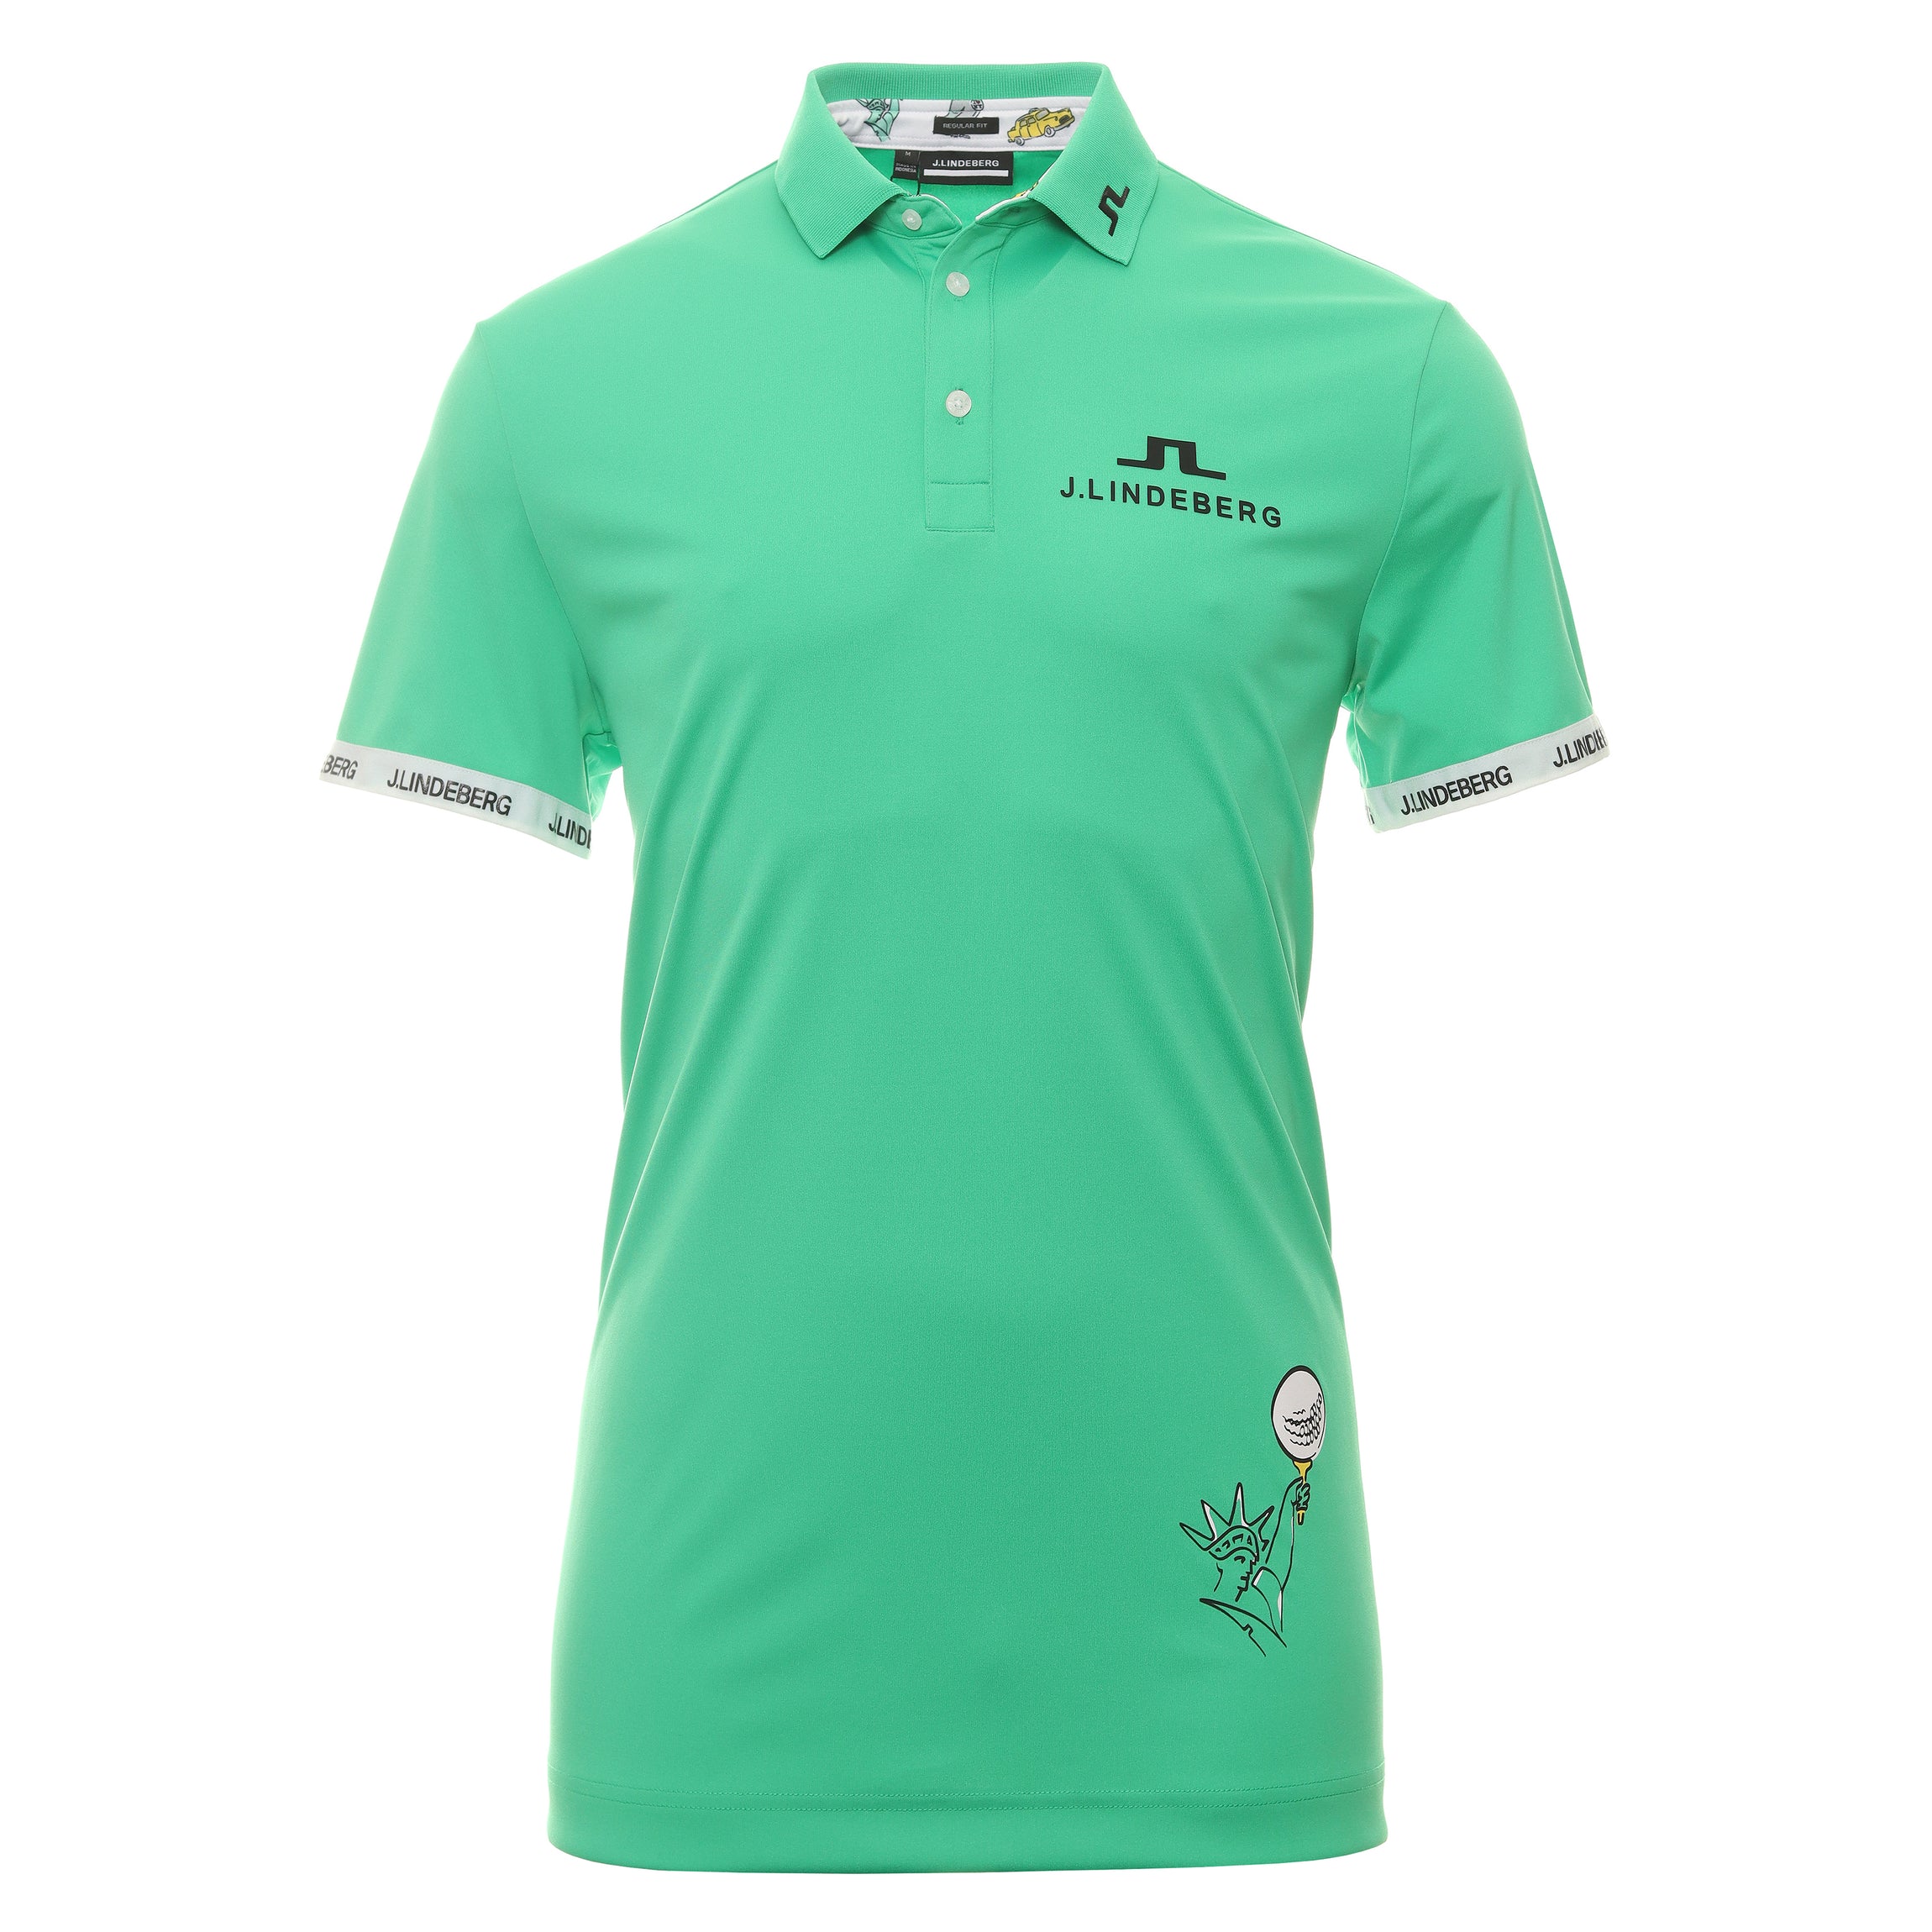 J.Lindeberg Golf KV Tour Polo Shirt GMJT08542 Blarney M140 